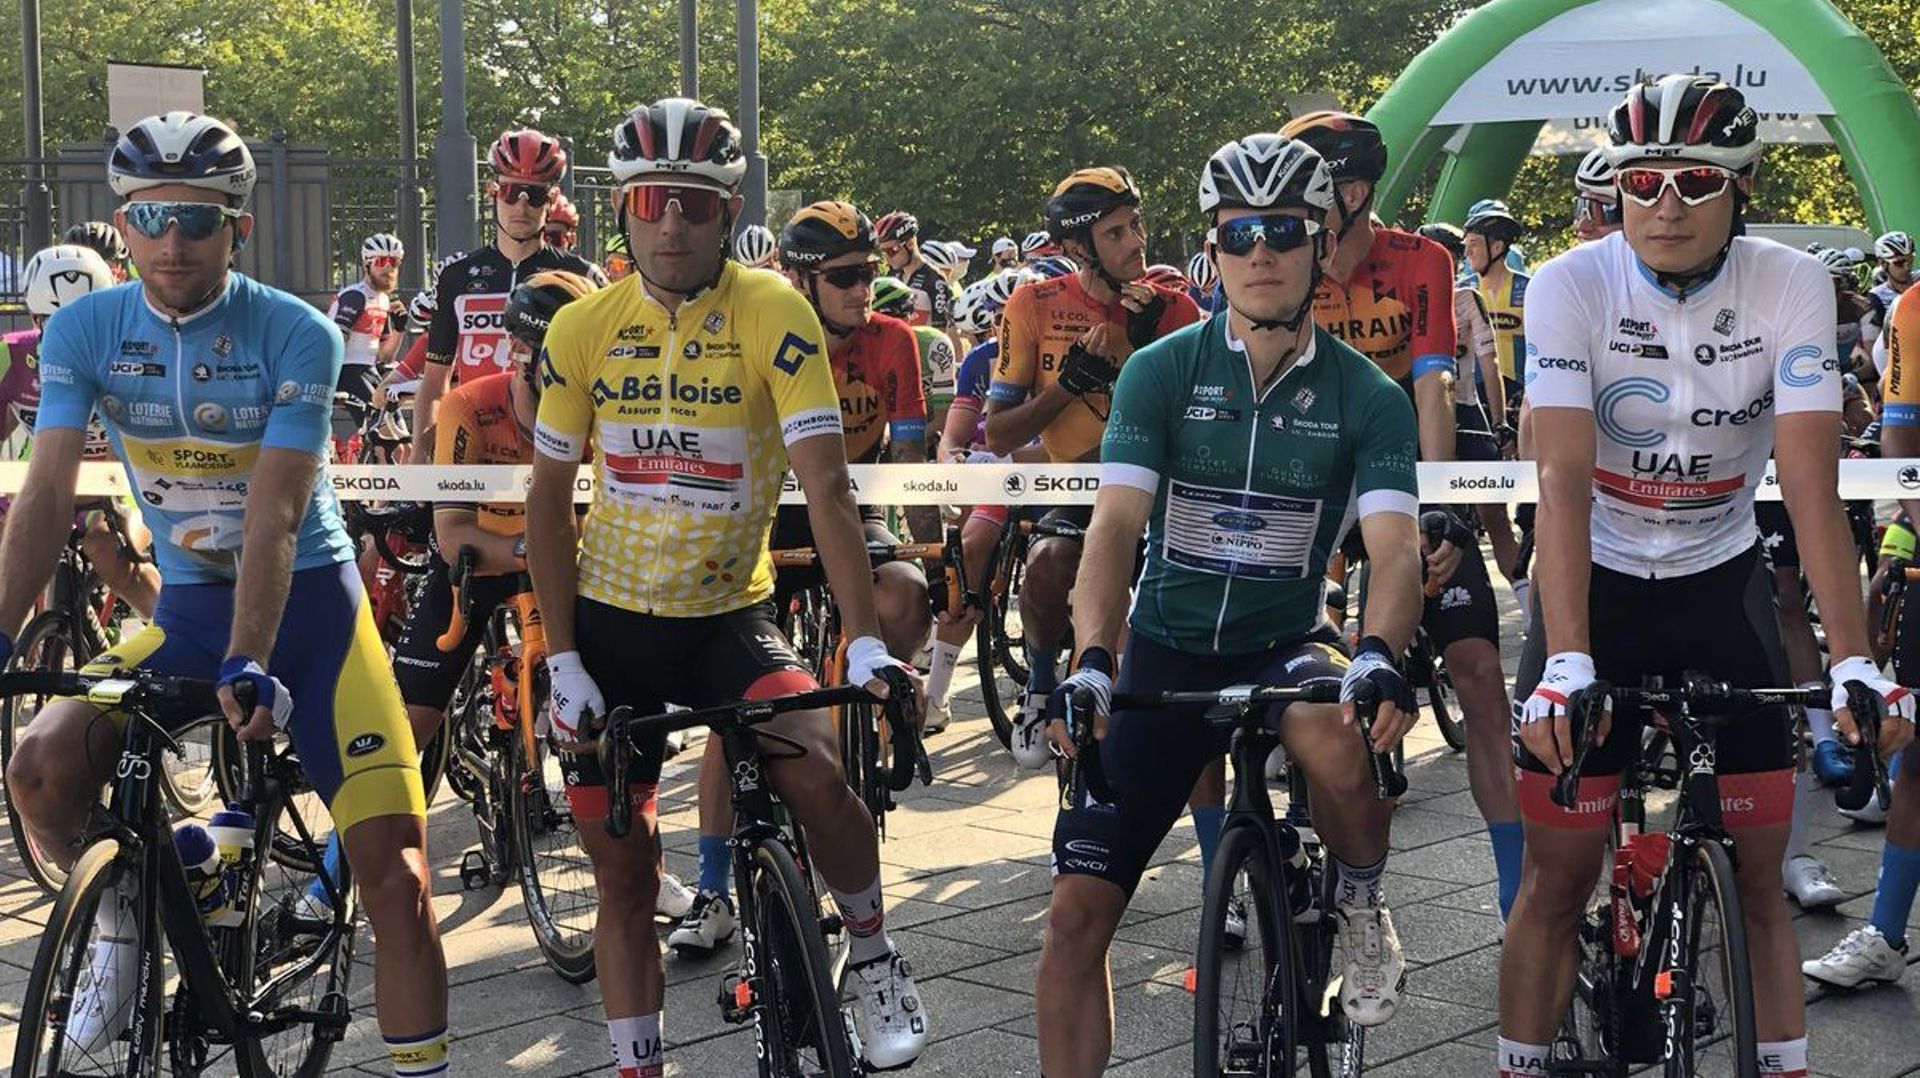 Les coureurs neutralisent la deuxième étape du Tour du Luxembourg, le parcours est trop dangereux